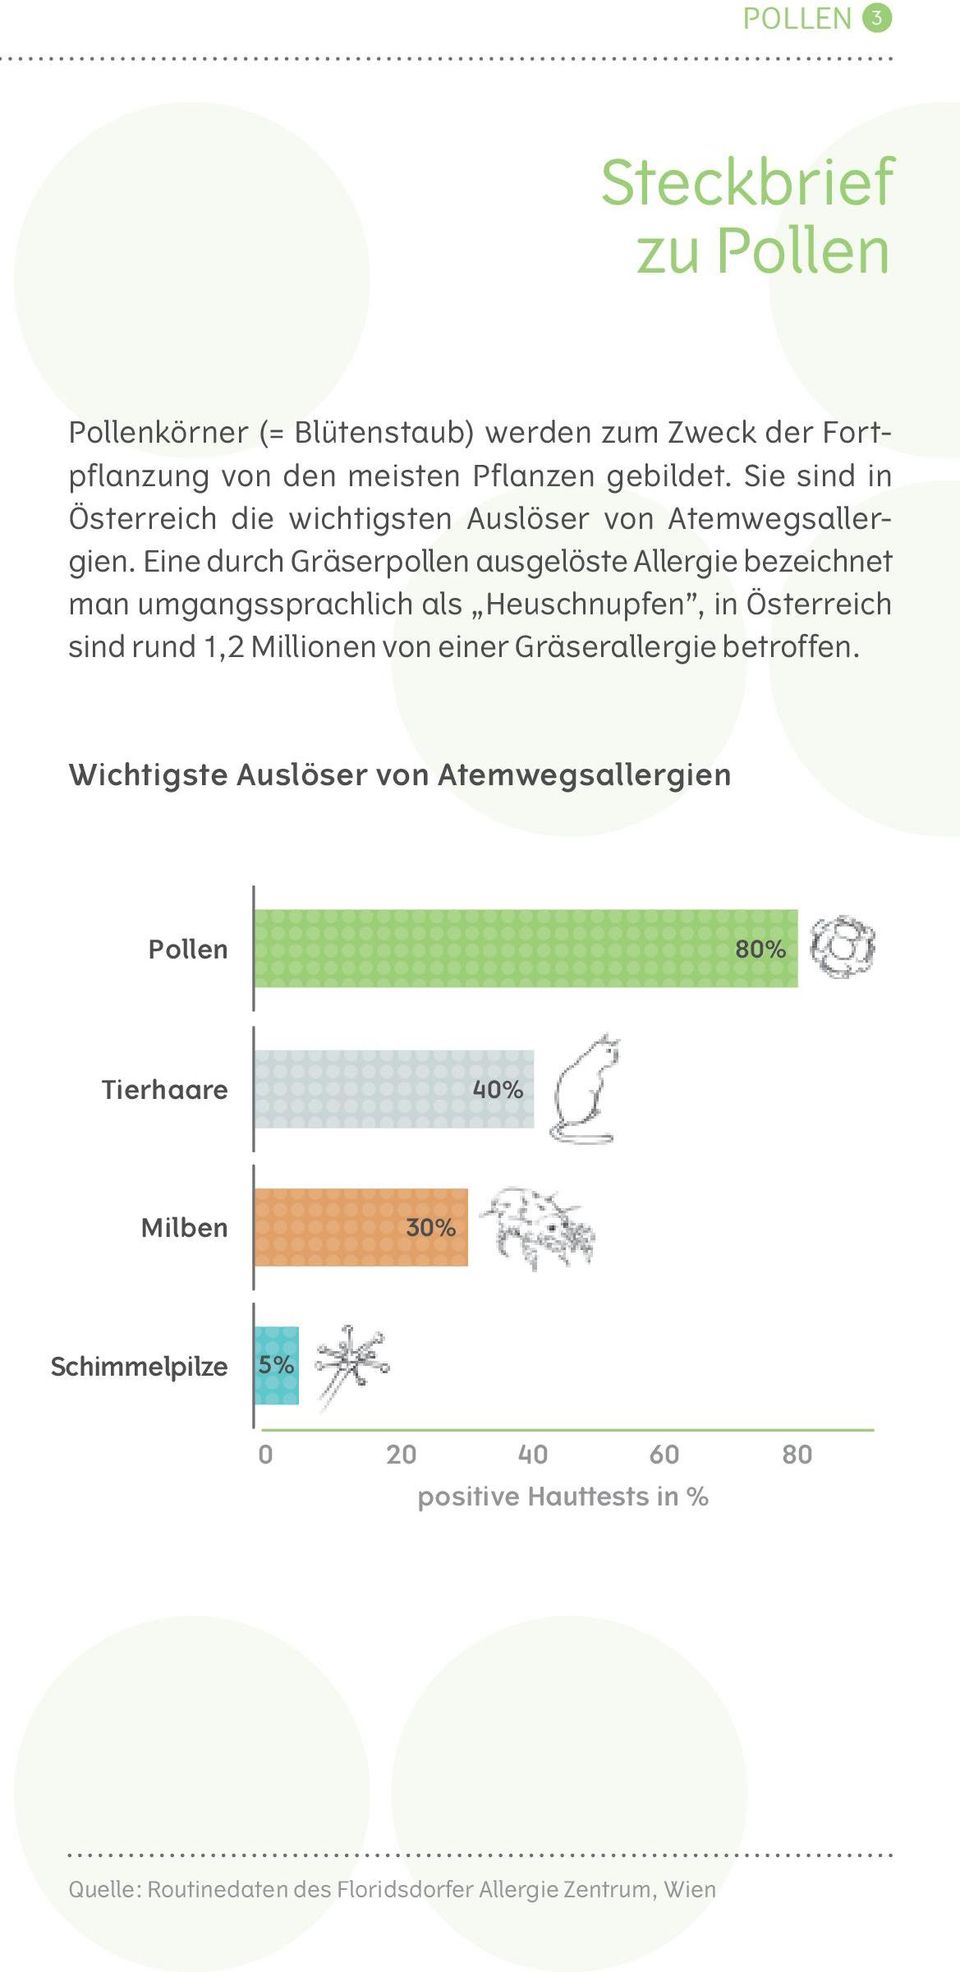 Eine durch Gräserpollen ausgelöste Allergie bezeichnet man umgangssprachlich als Heuschnupfen, in Österreich sind rund 1,2 Millionen von